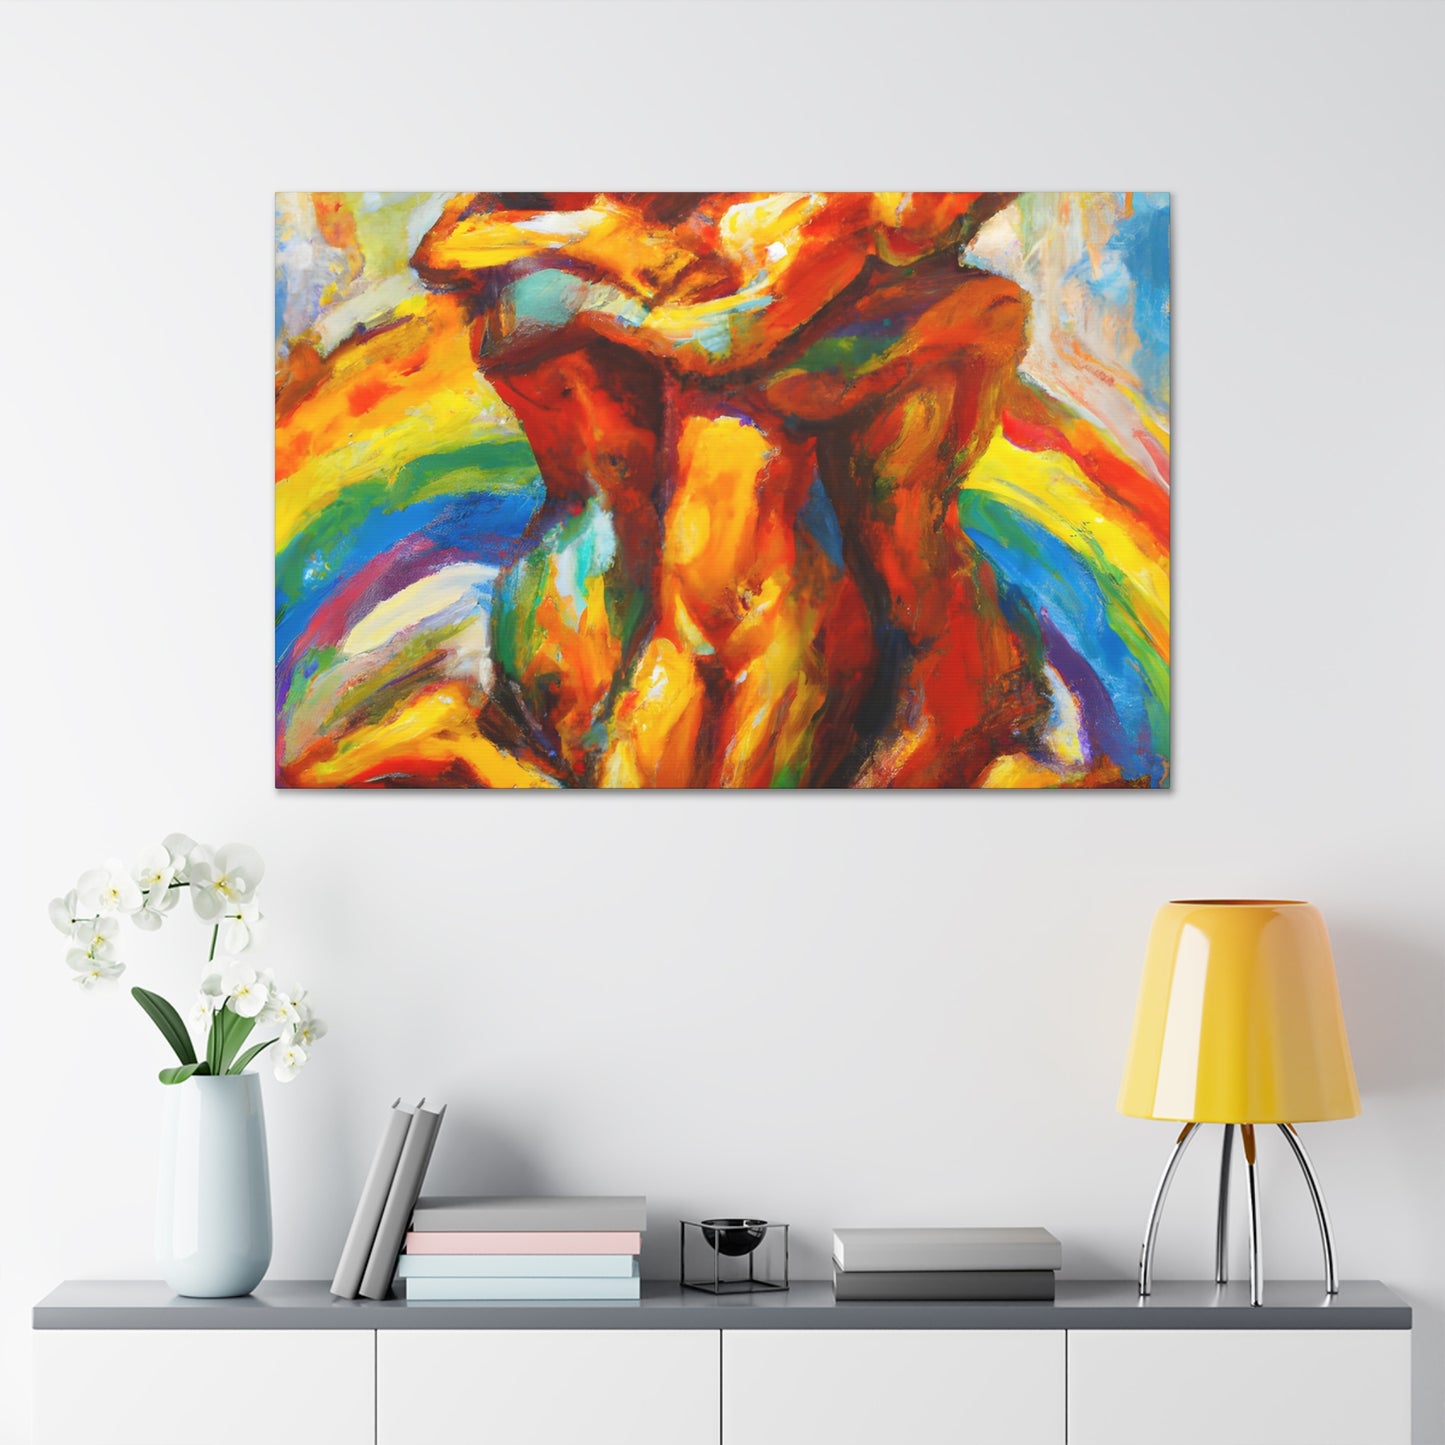 Daxx - Gay Love Canvas Art